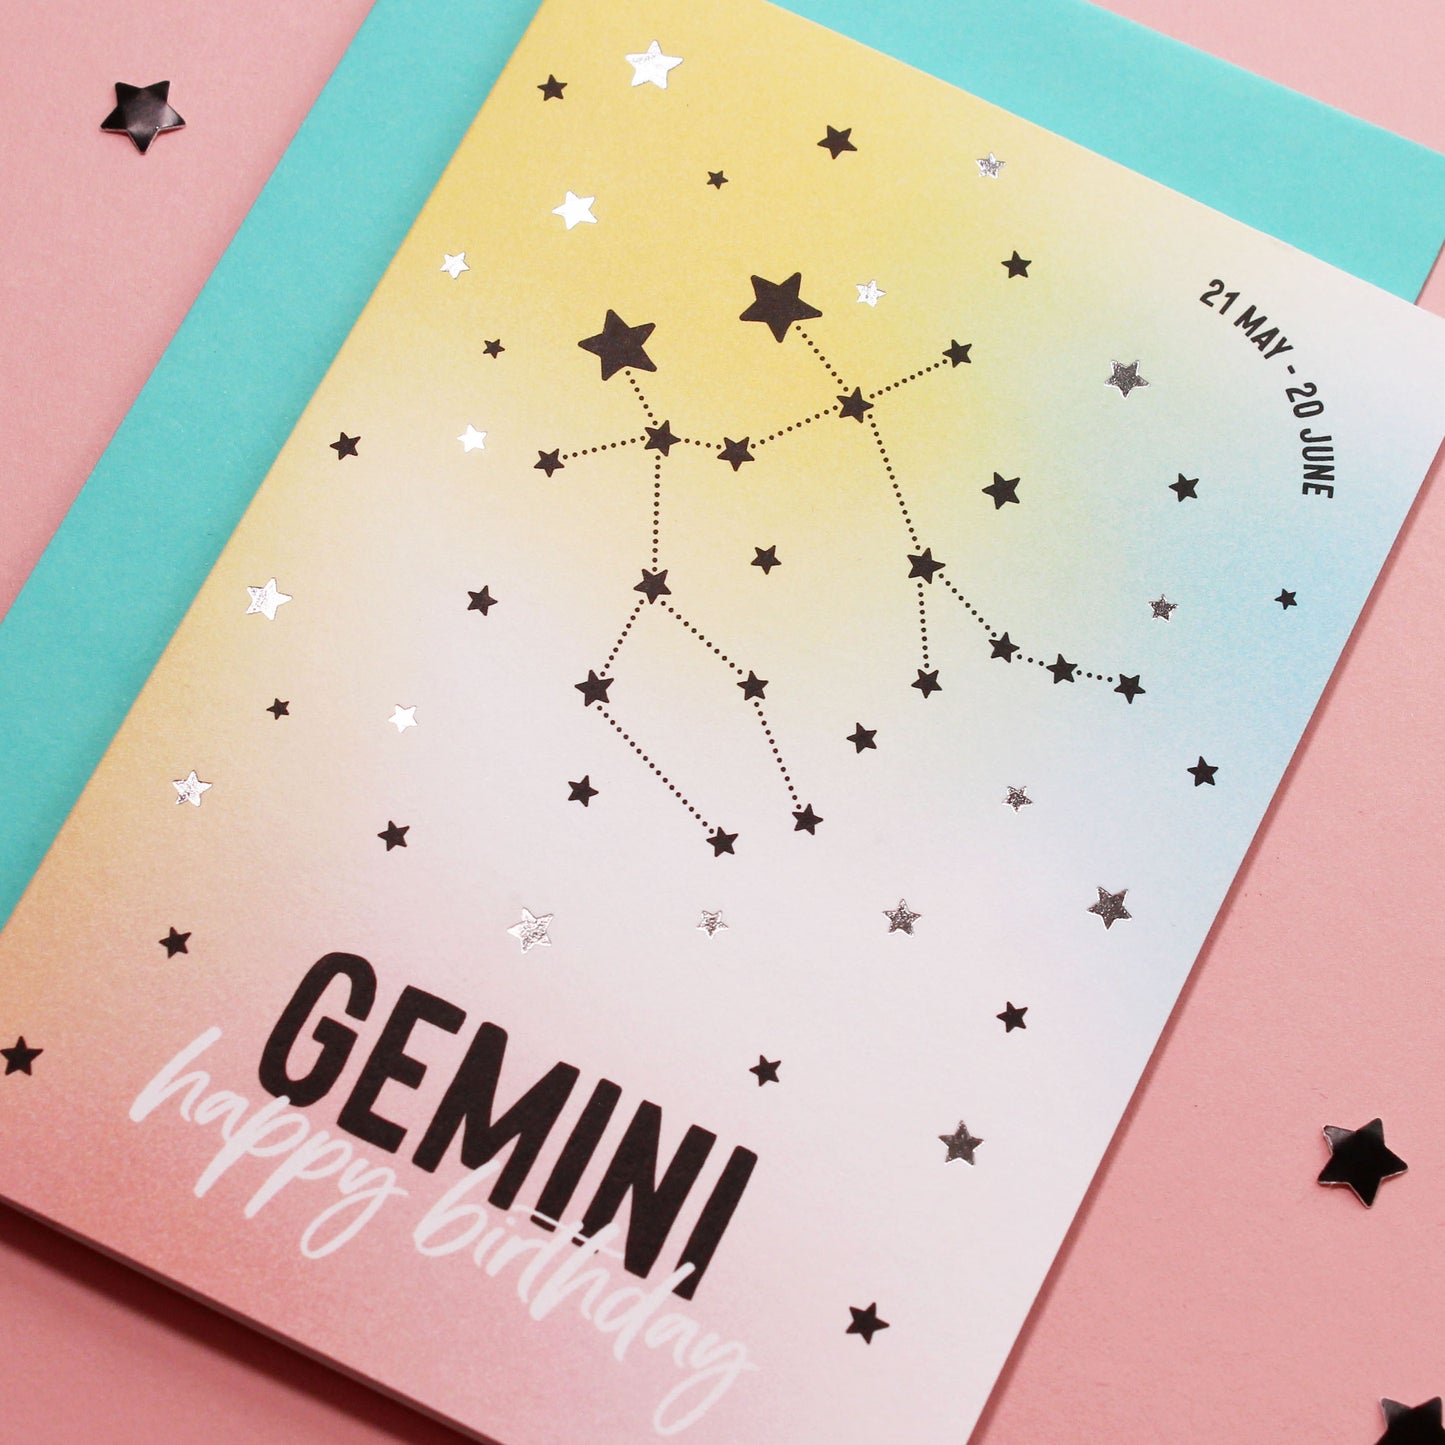 Gemini birthday card